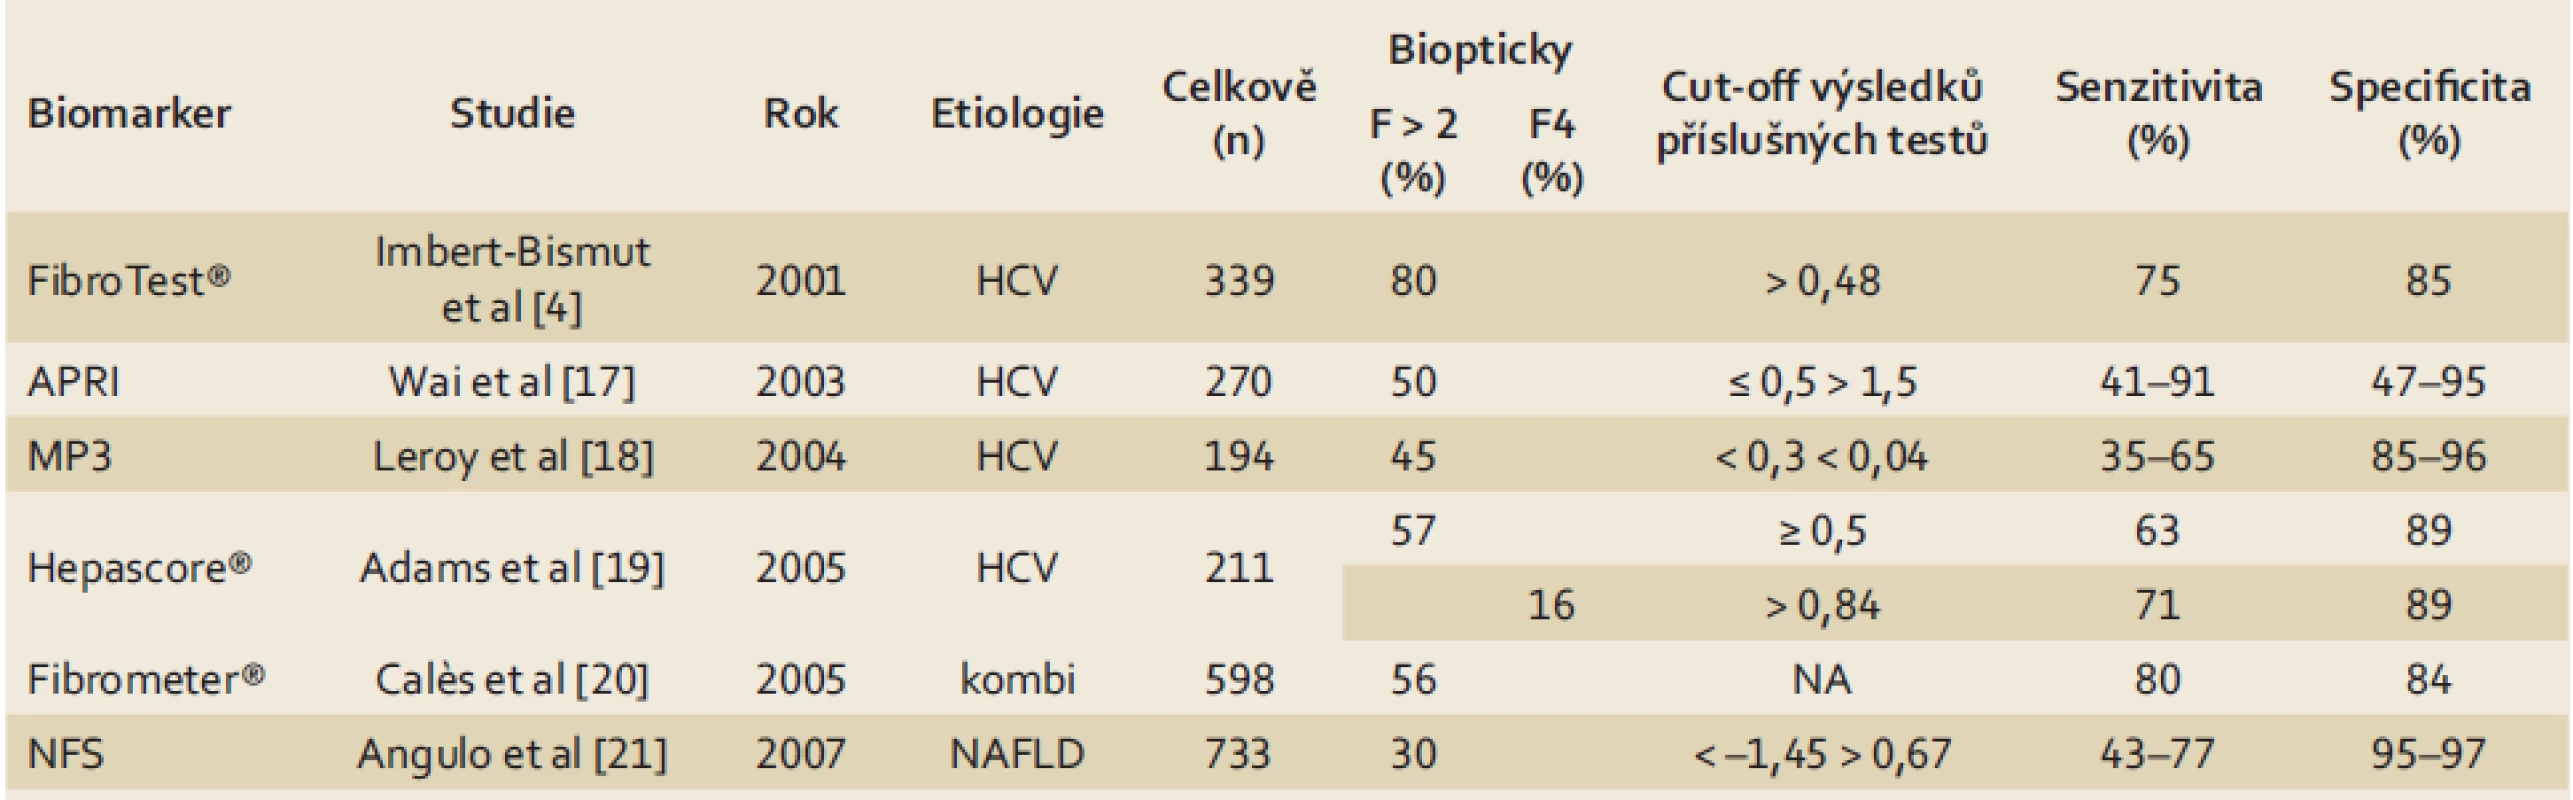 Senzitivita a specificita biomarkerů pro významnou fibrózu a cirhózu dle [7].
Tab. 2. Sensitivity and specificity of biomarkers for significant fibrosis and cirrhosis according to [7].